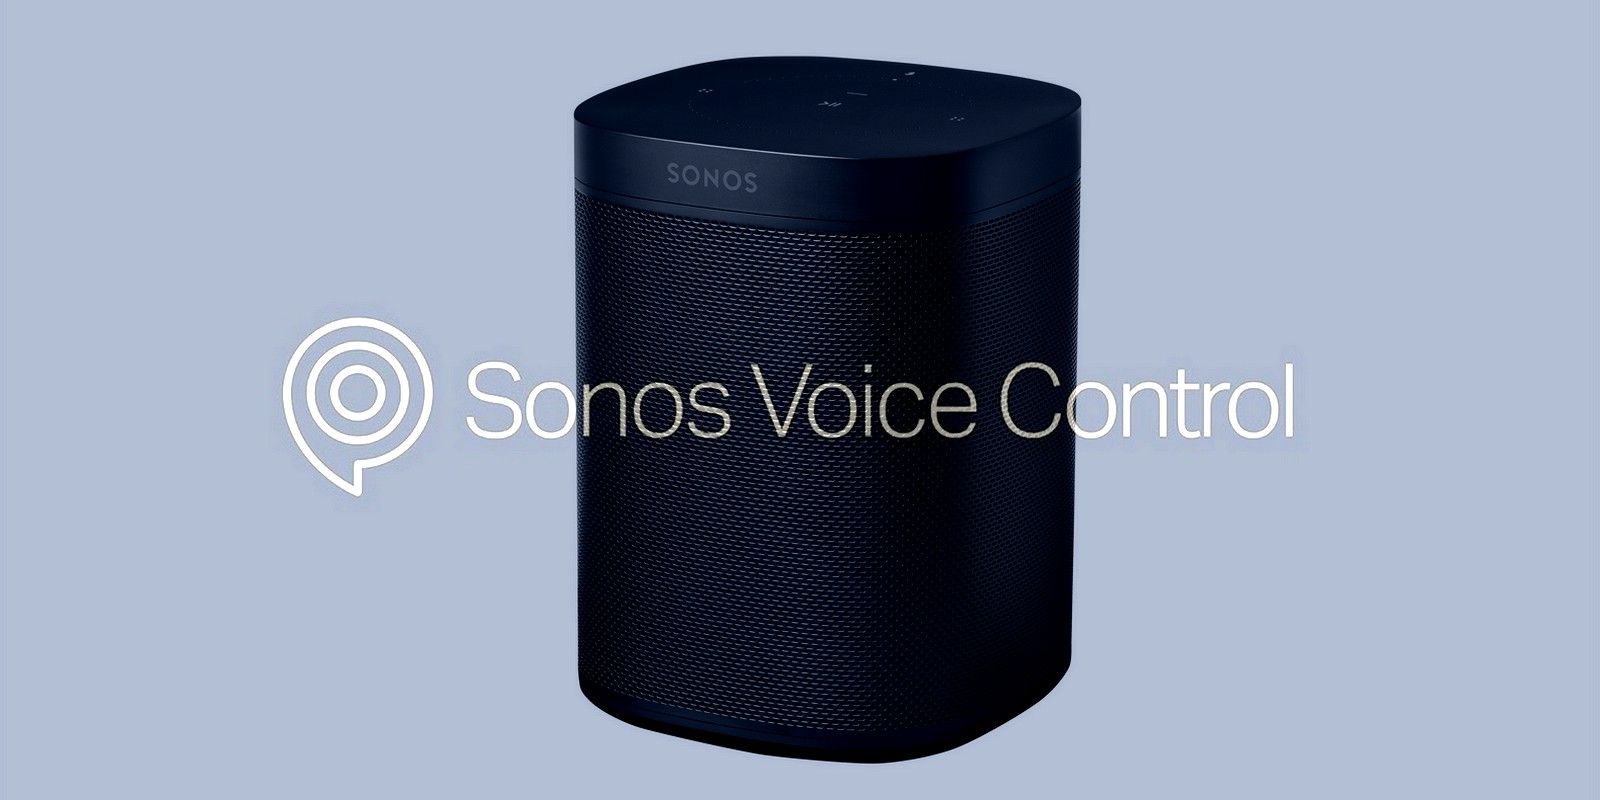 Sonos Voice Control AI assistant